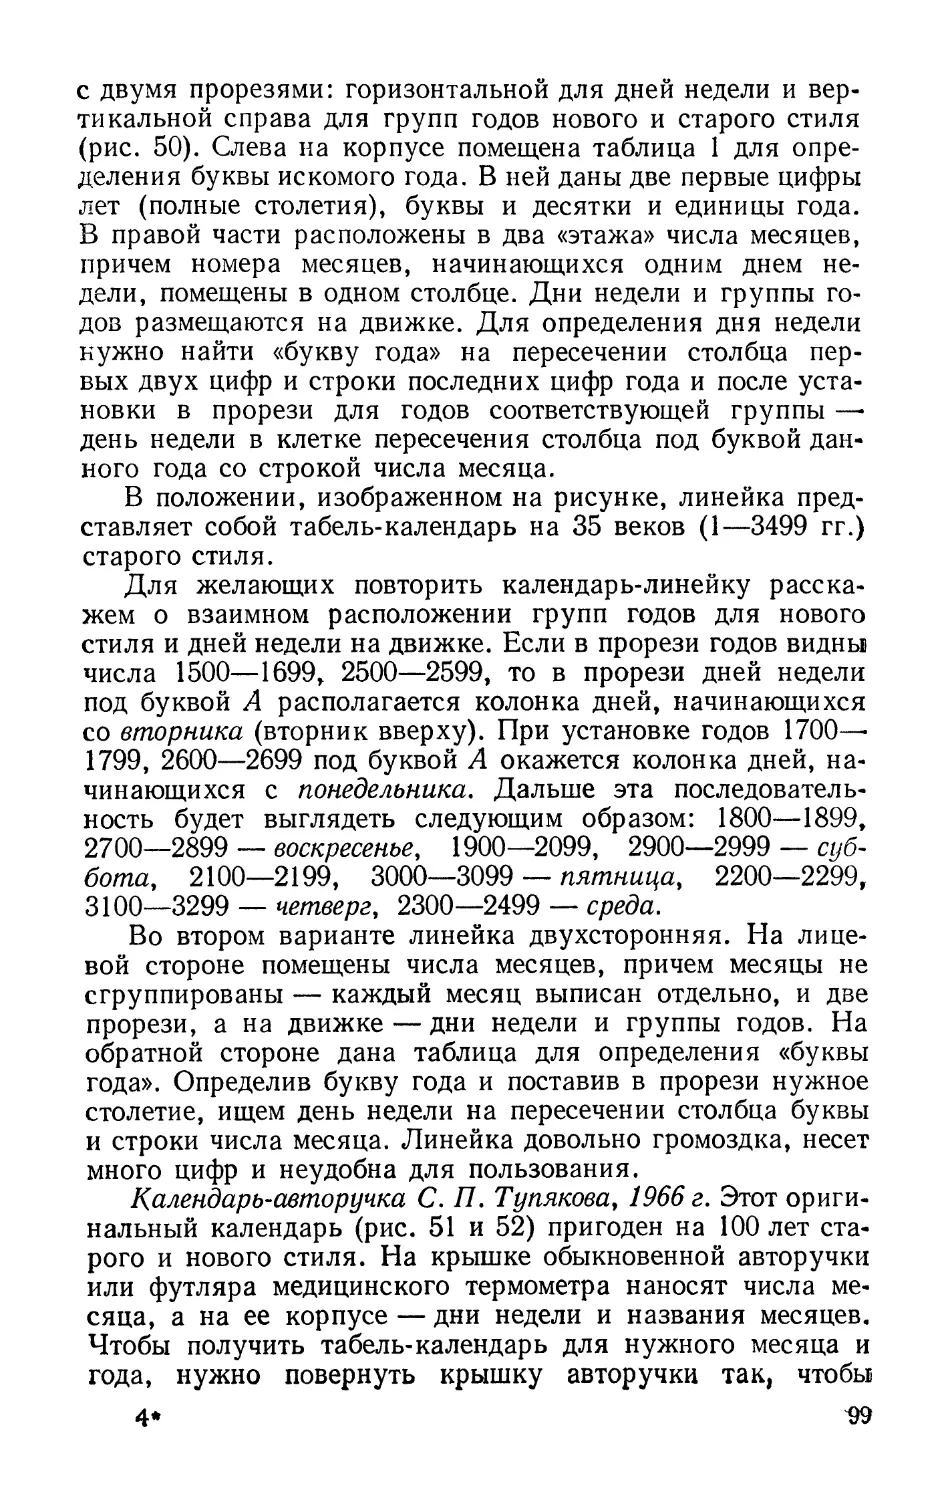 Календарь-авторучка С. П. Тупякова, 1966 г.